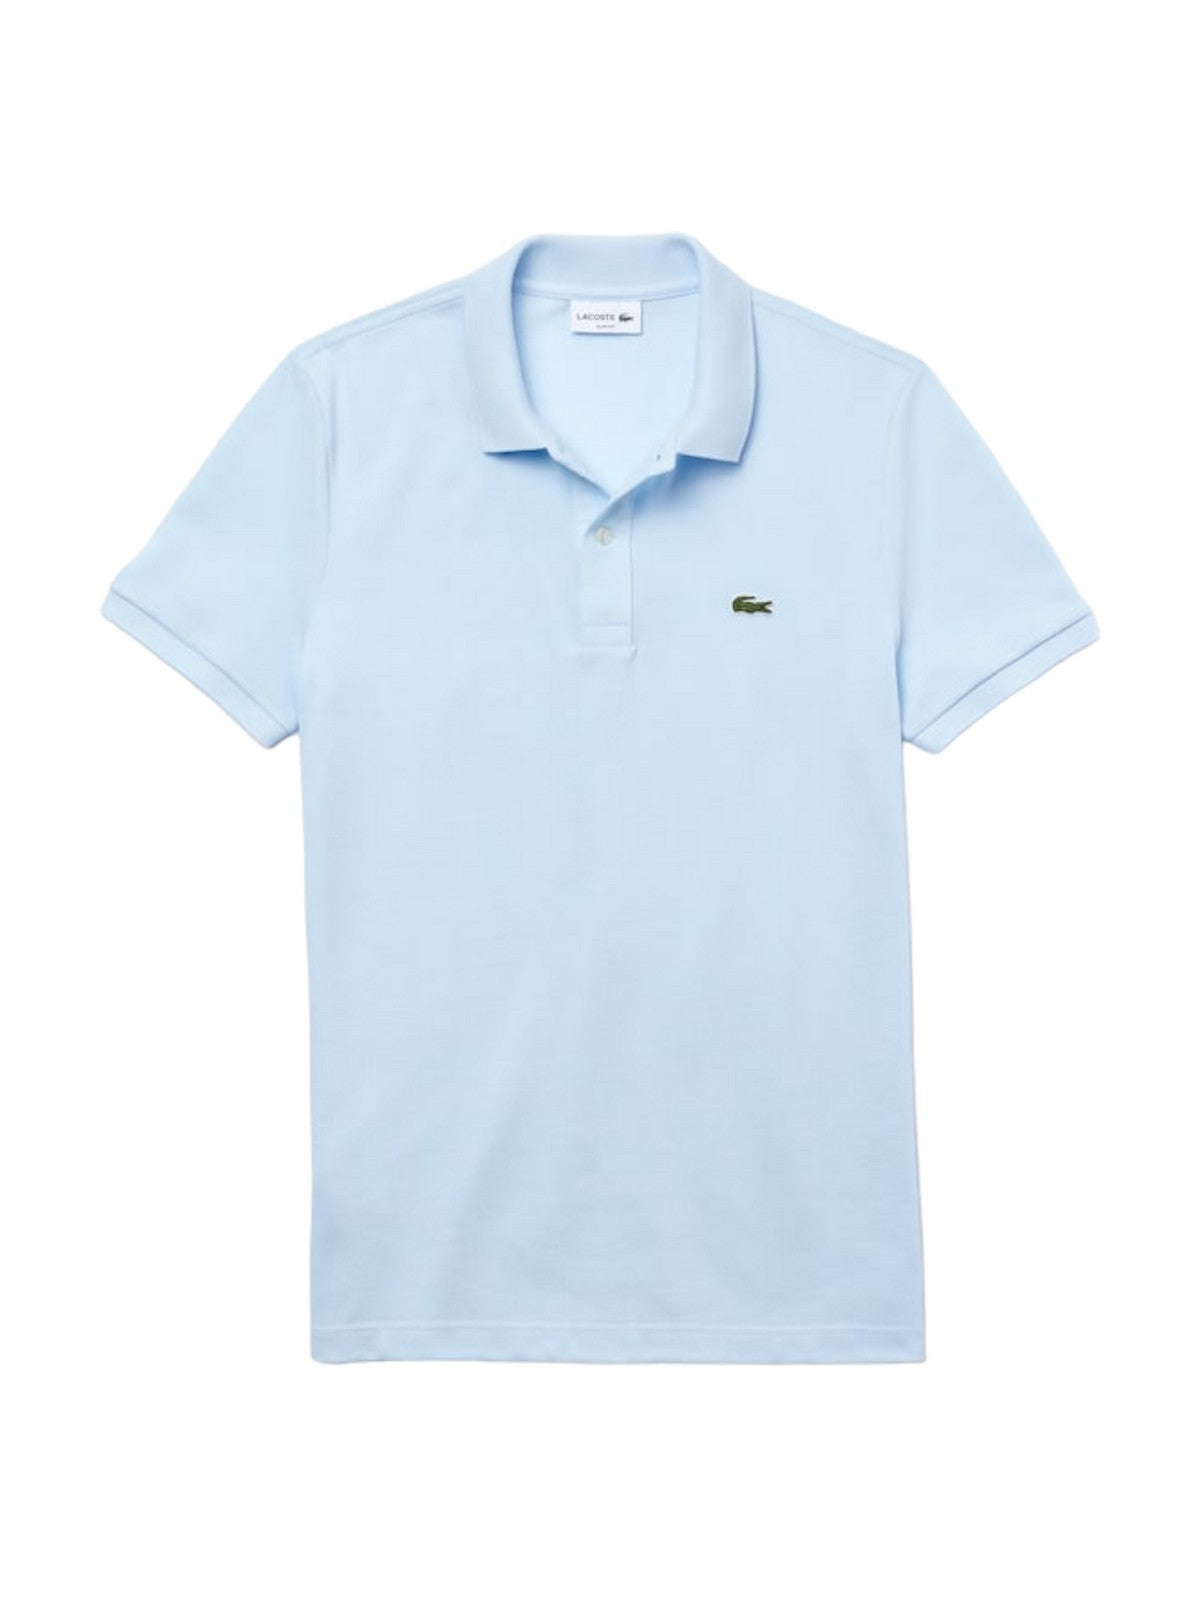 LACOSTE T-Shirt et Polo Hommes PH4012 T01 Bleu